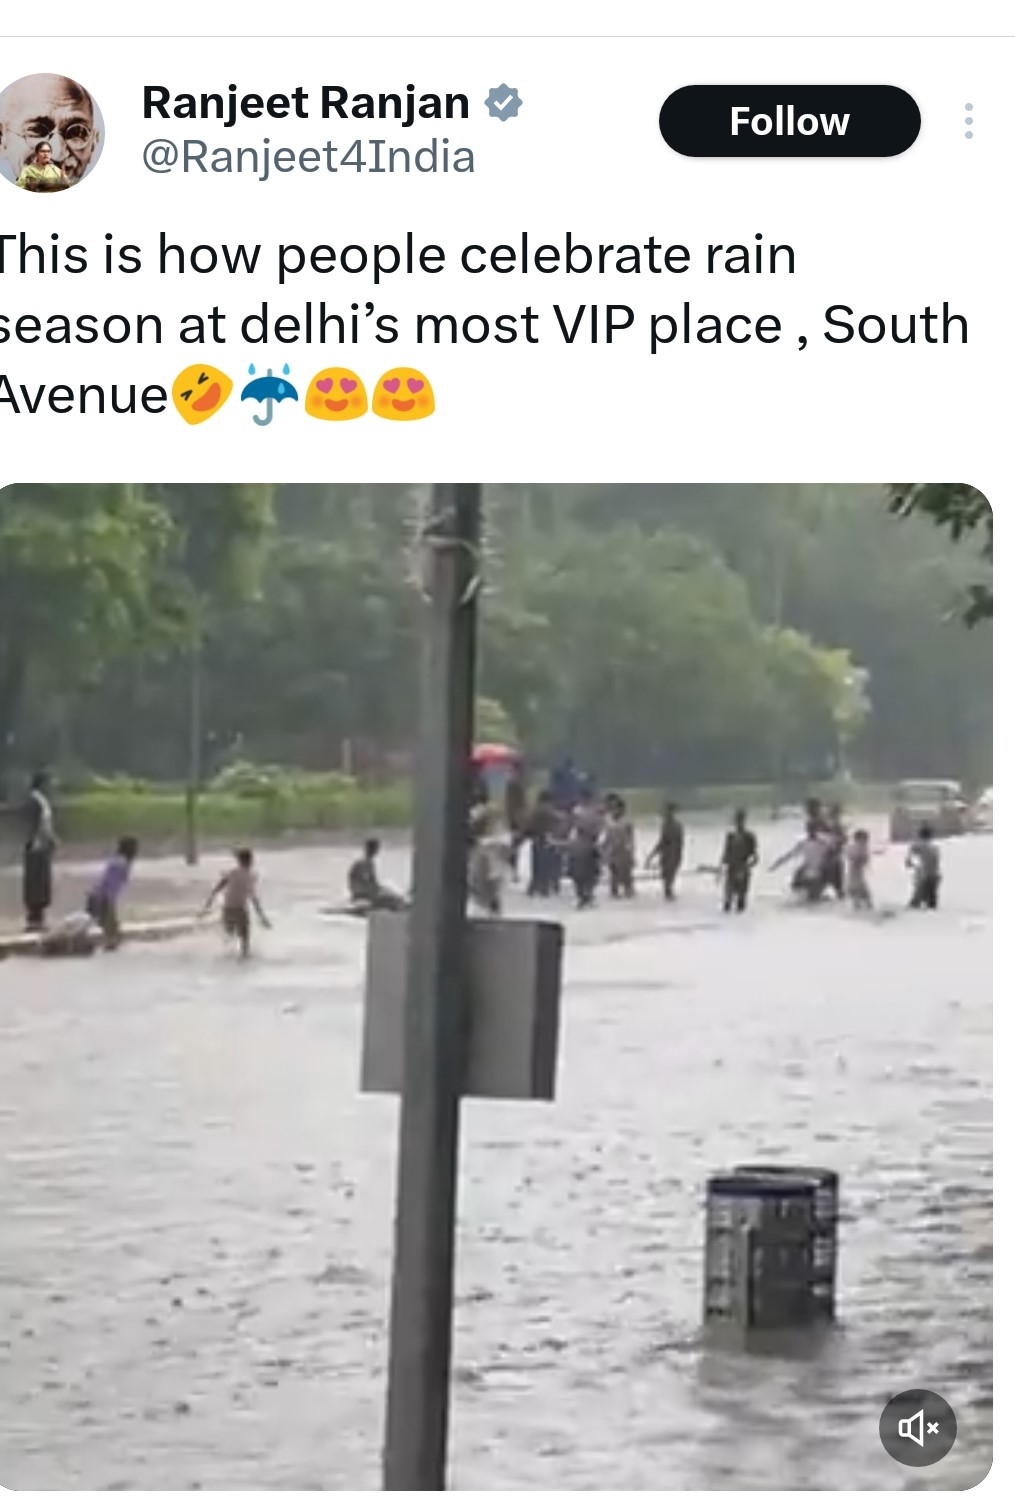 भारी बारिश के बाद दिल्ली में चारों तरफ पानी ही पानी